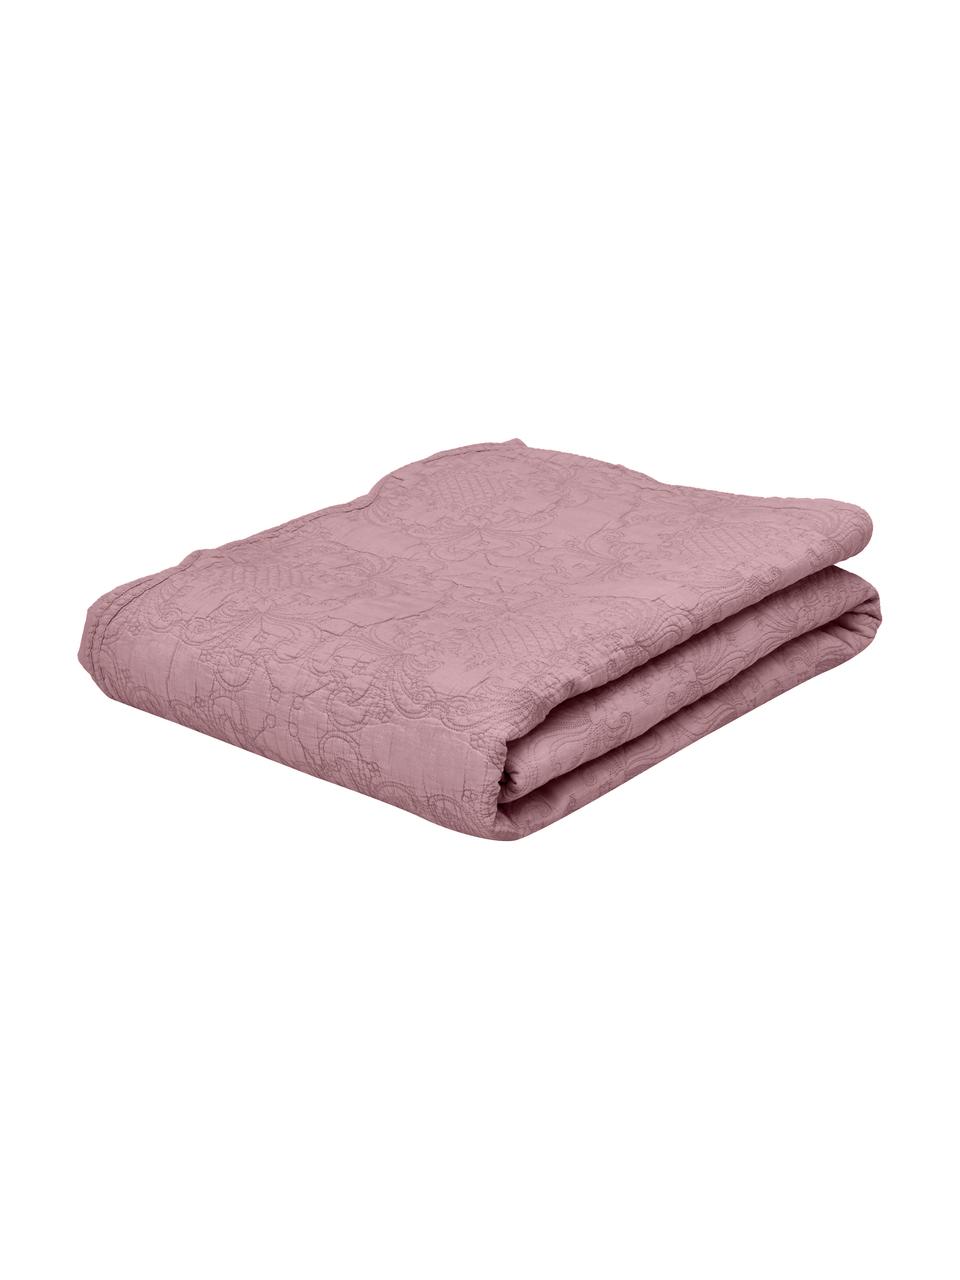 Bestickte Tagesdecke Madlon, Bezug: 100% Baumwolle, Lila, B 180 x L 250 cm (für Betten bis 140 x 200 cm)